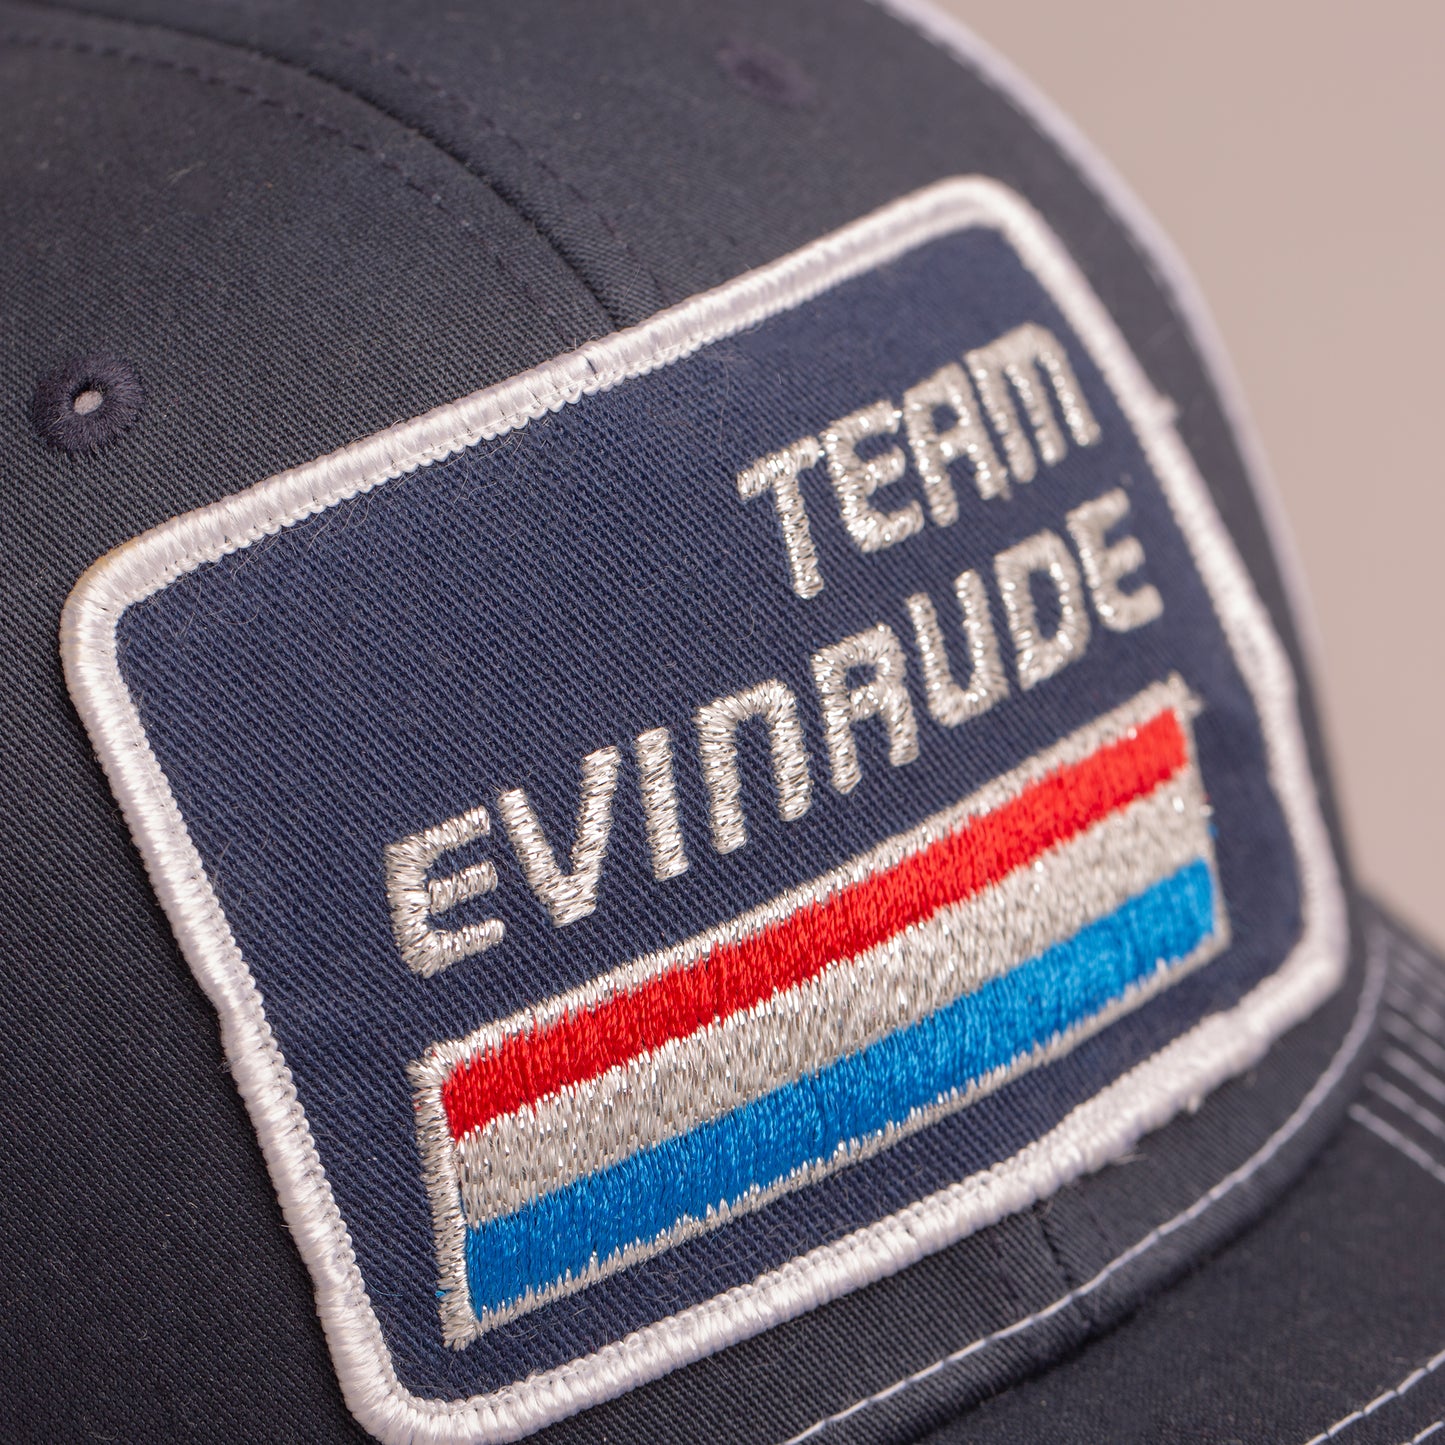 Team Evinrude